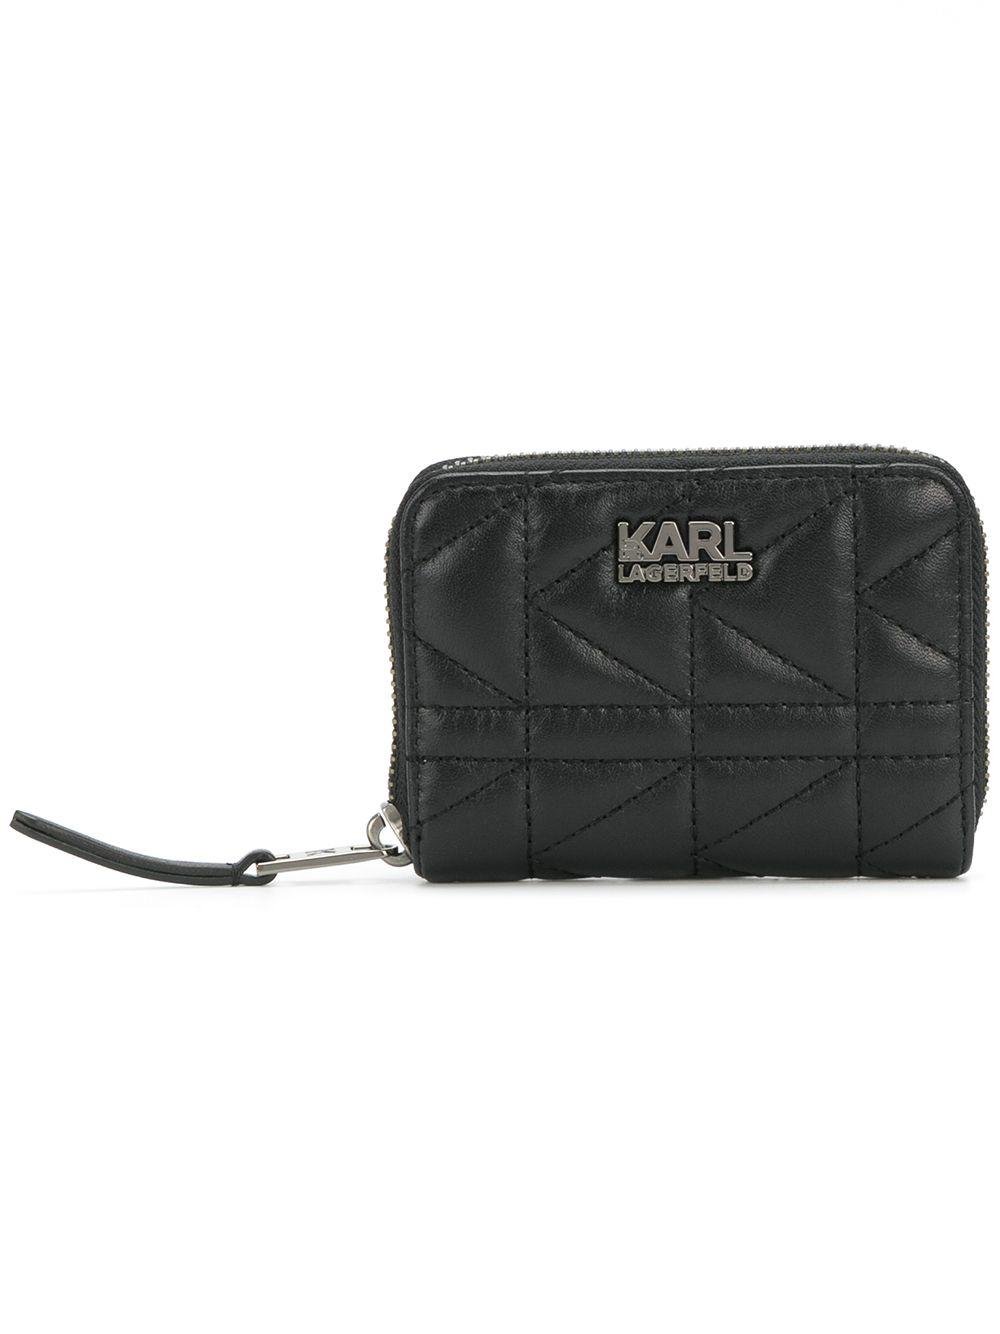 Karl Lagerfeld Leather K/kuilted Zip Wallet in Black - Lyst